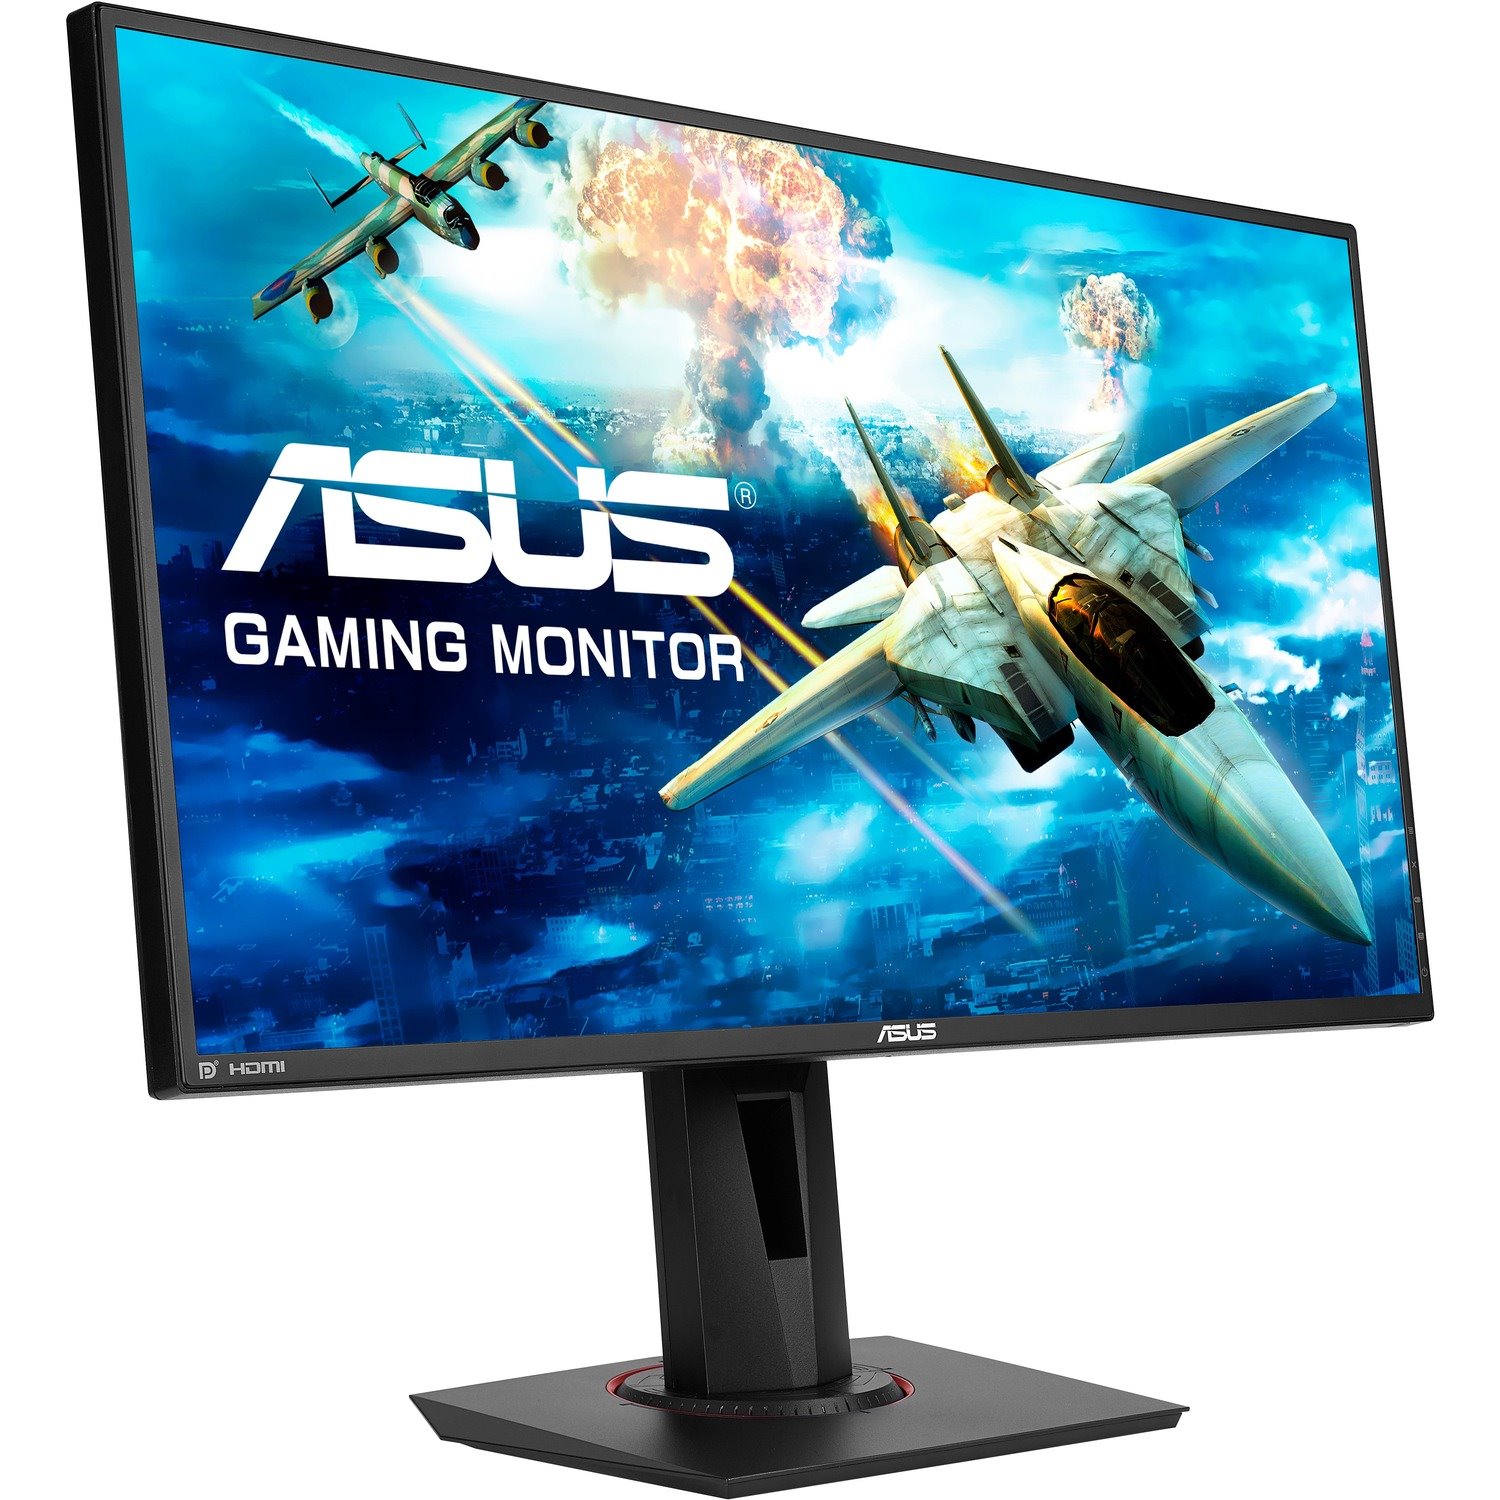 Asus VG278Q 27" Class Full HD Gaming LCD Monitor - 16:9 - Black